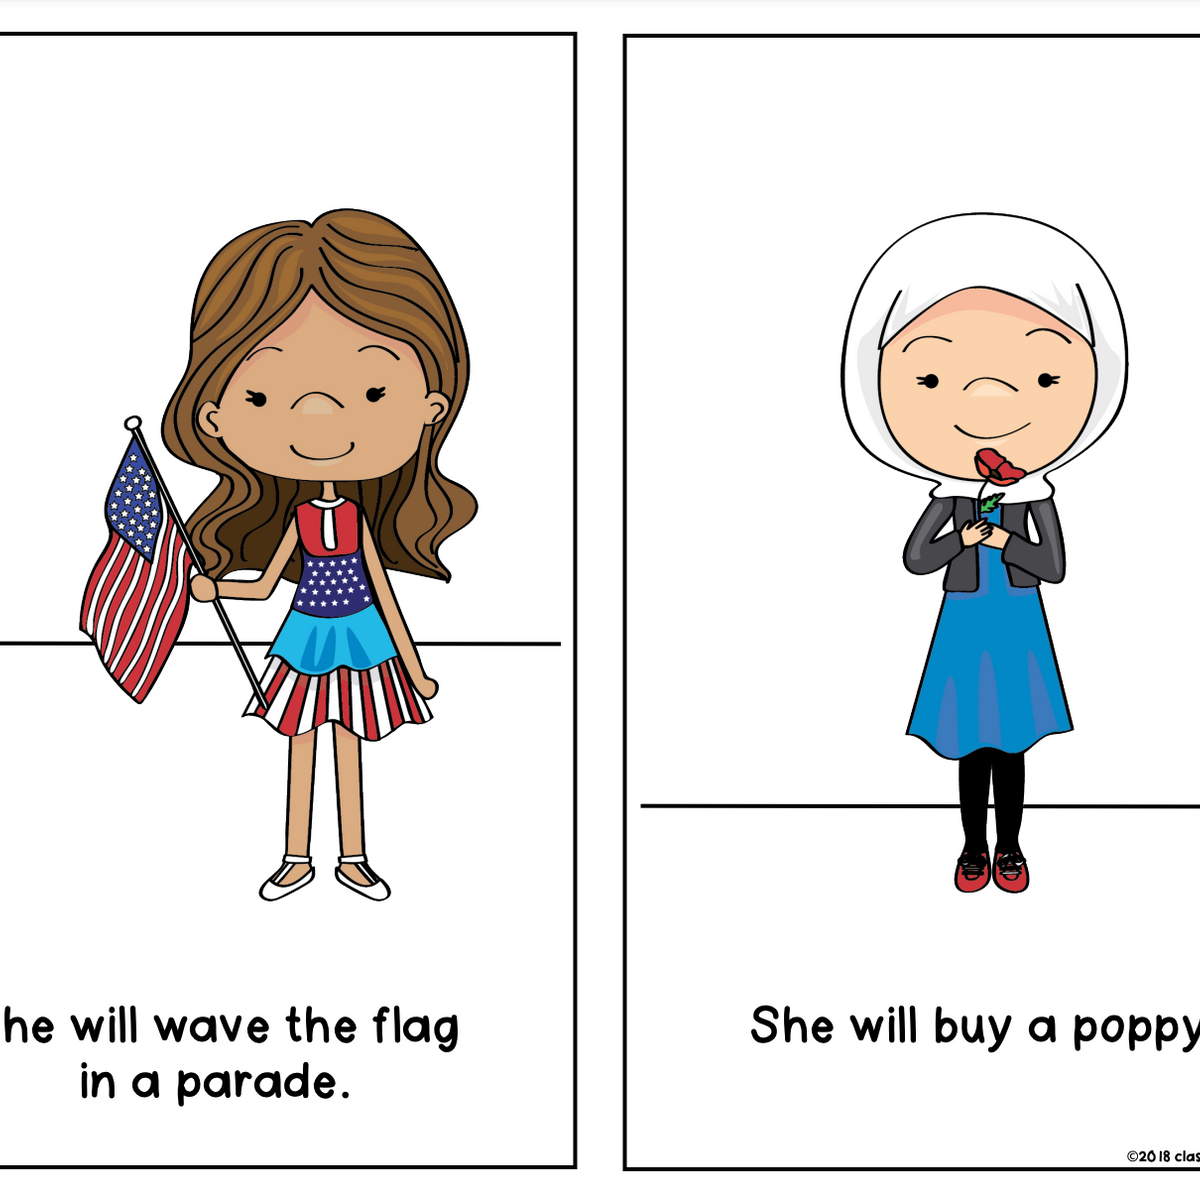 Patriot Reader USA Social Studies Patriotism Kindergarten & First Grade